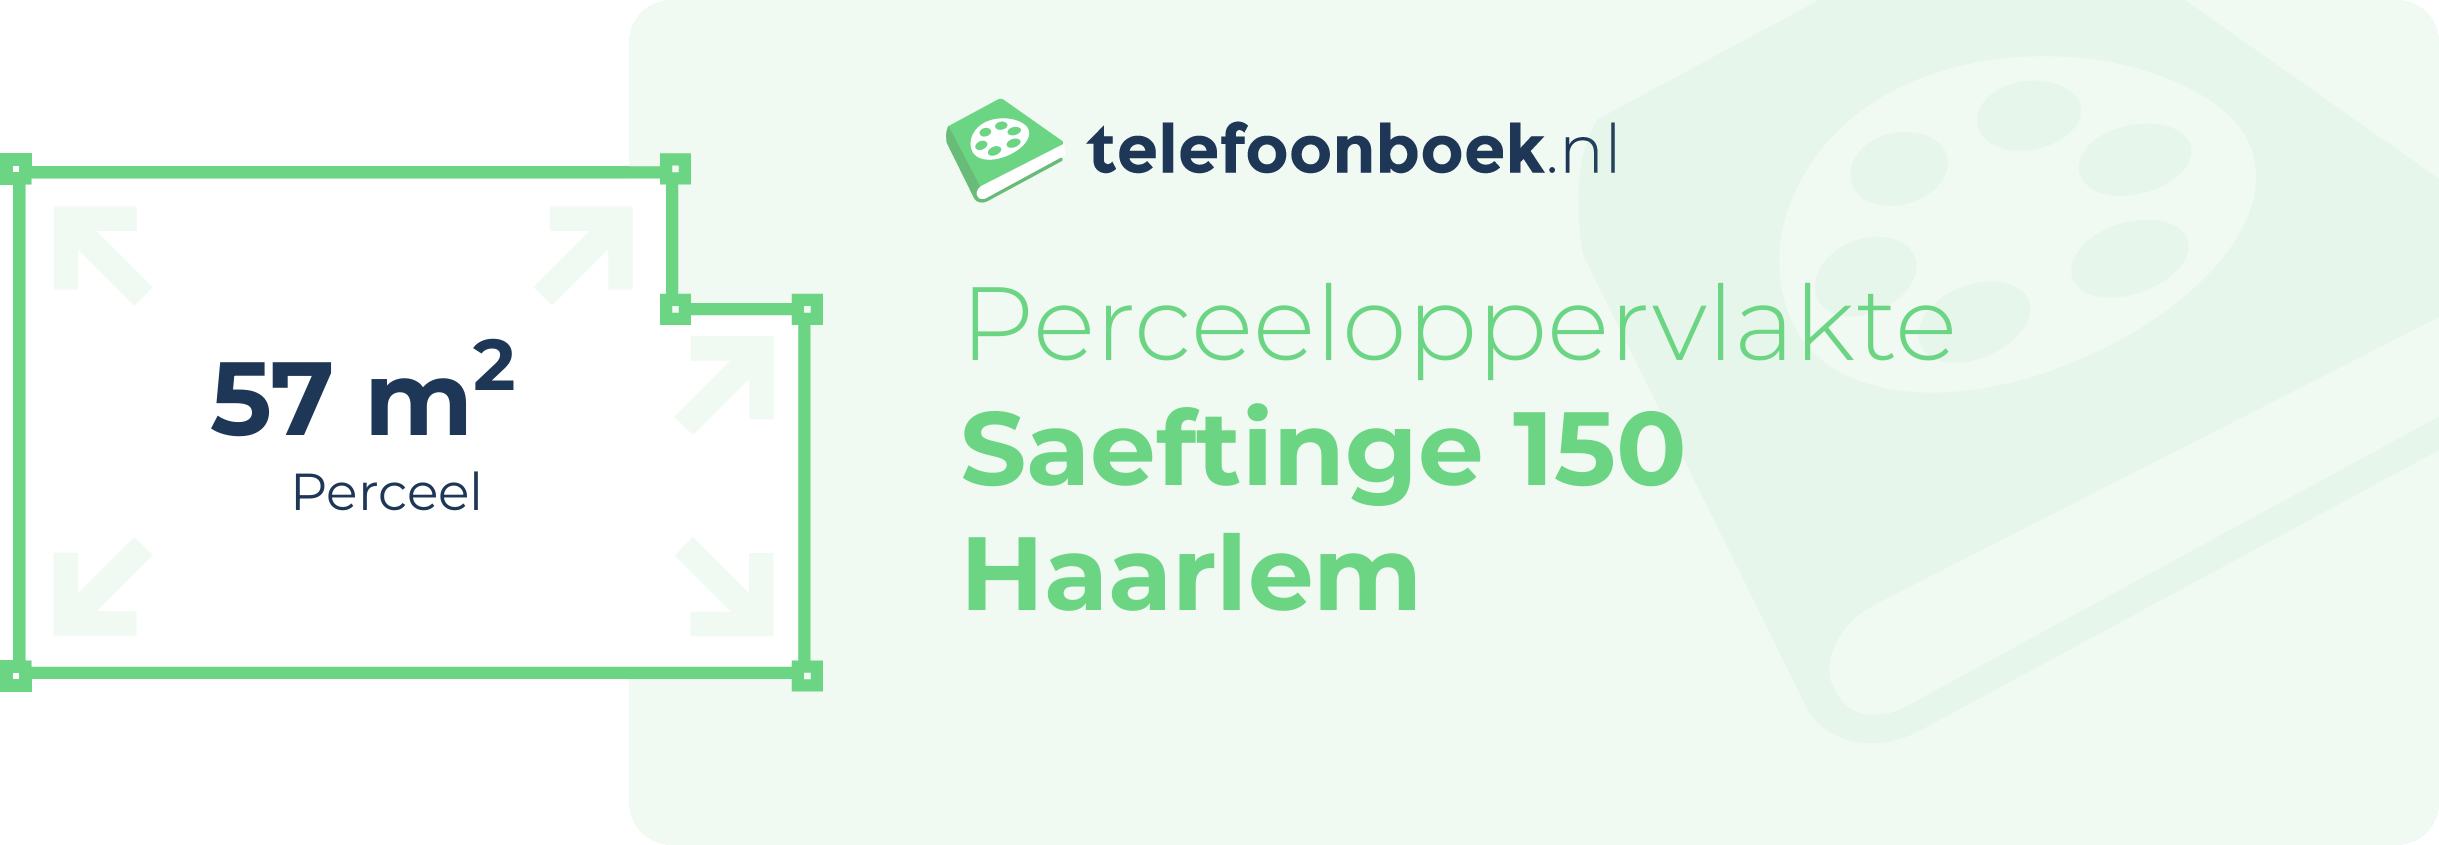 Perceeloppervlakte Saeftinge 150 Haarlem